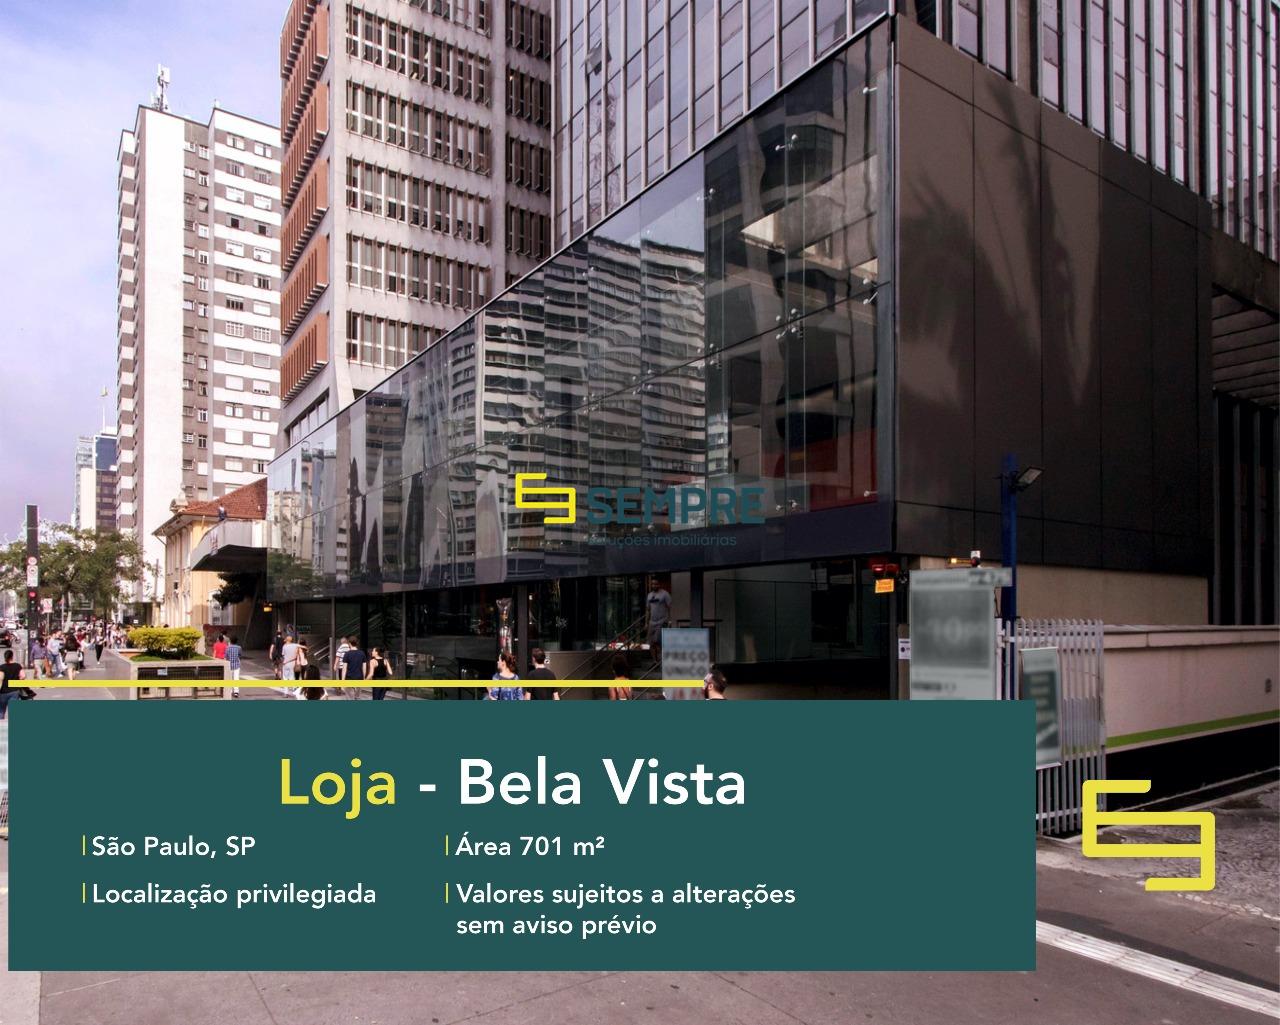 Loja para alugar na avenida Paulista em SP, excelente localização. O estabelecimento comercial conta com área de 701,18 m².